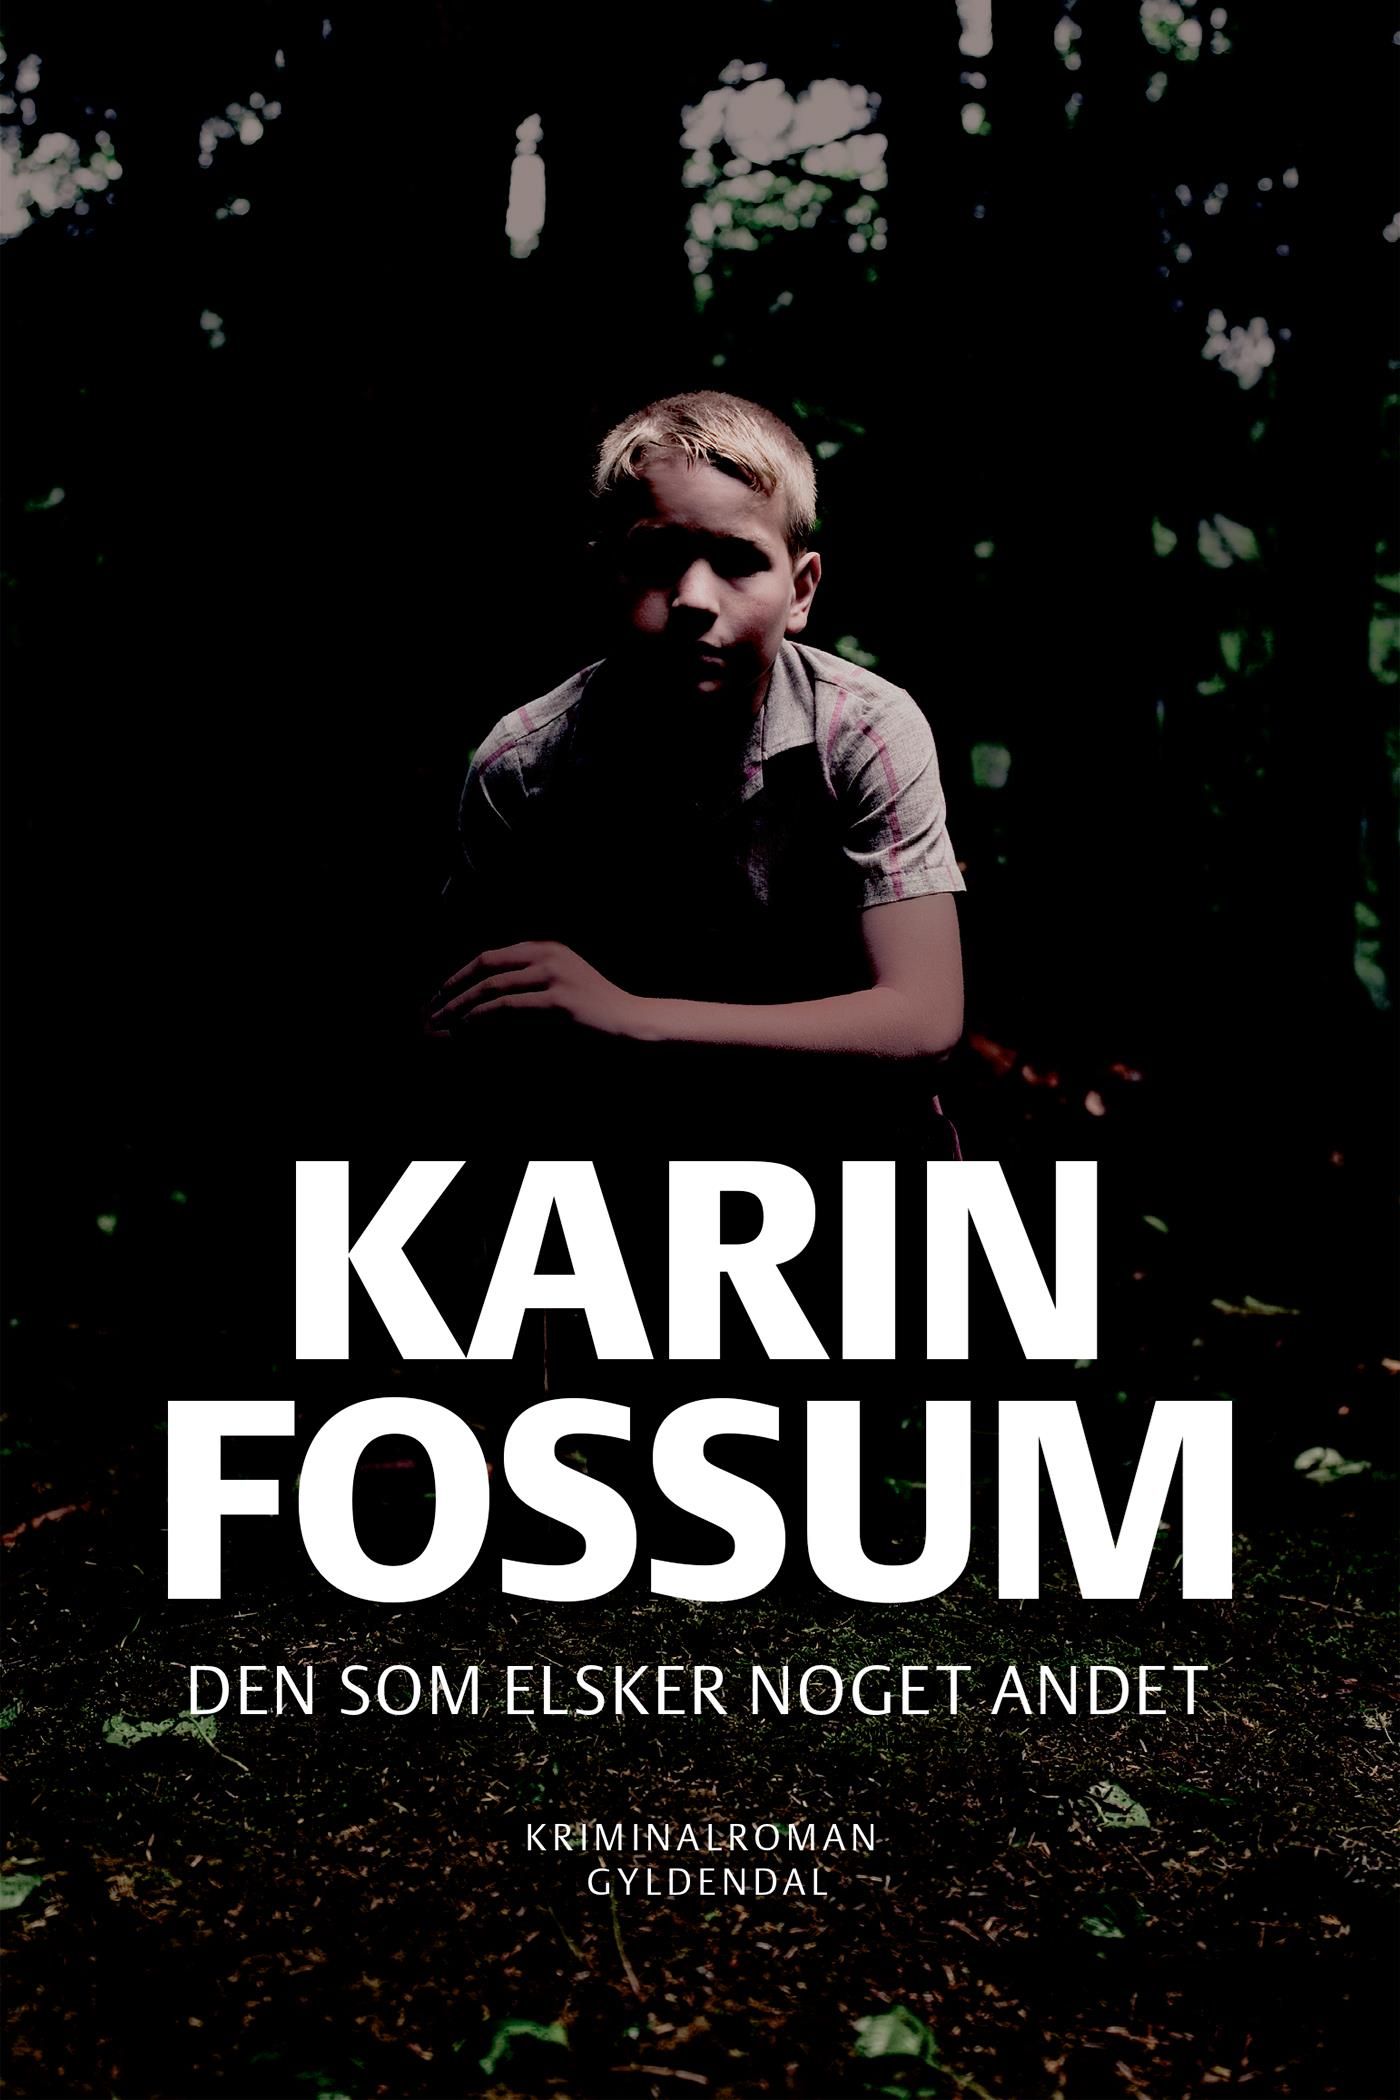 Den som elsker noget andet, e-bok av Karin Fossum